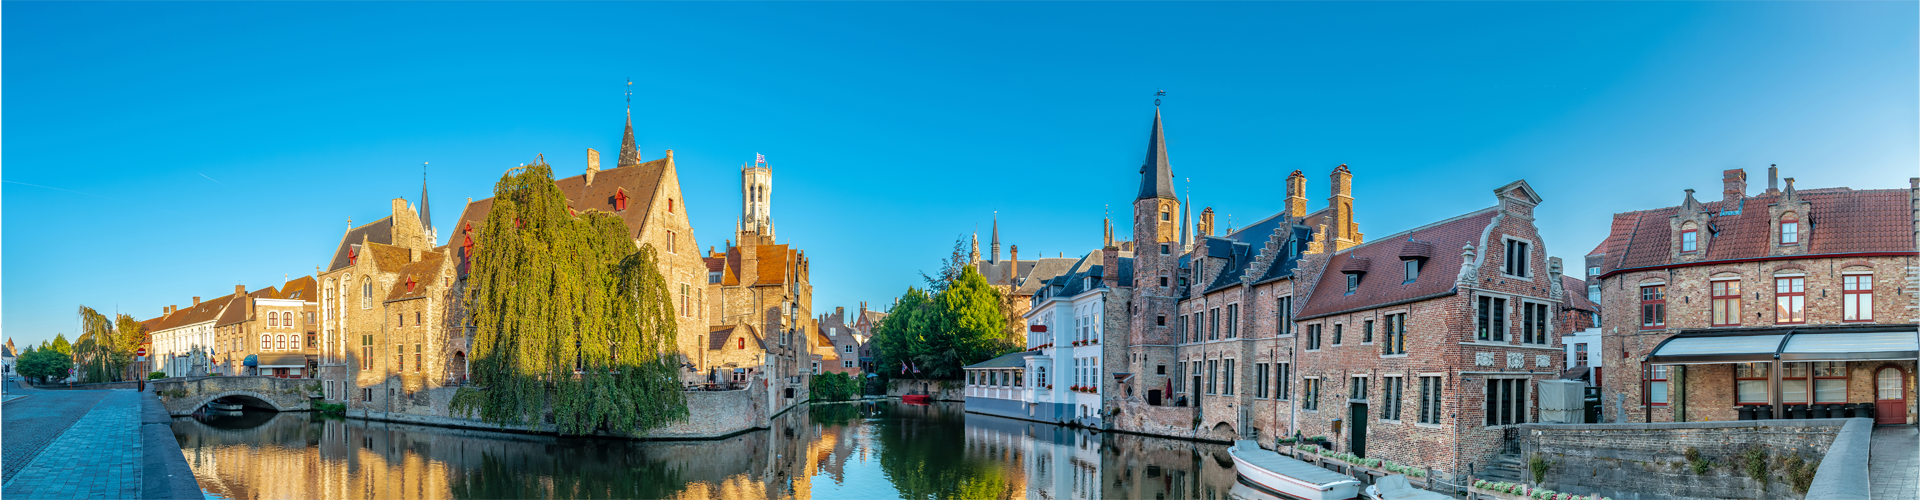 Bruges Skyline